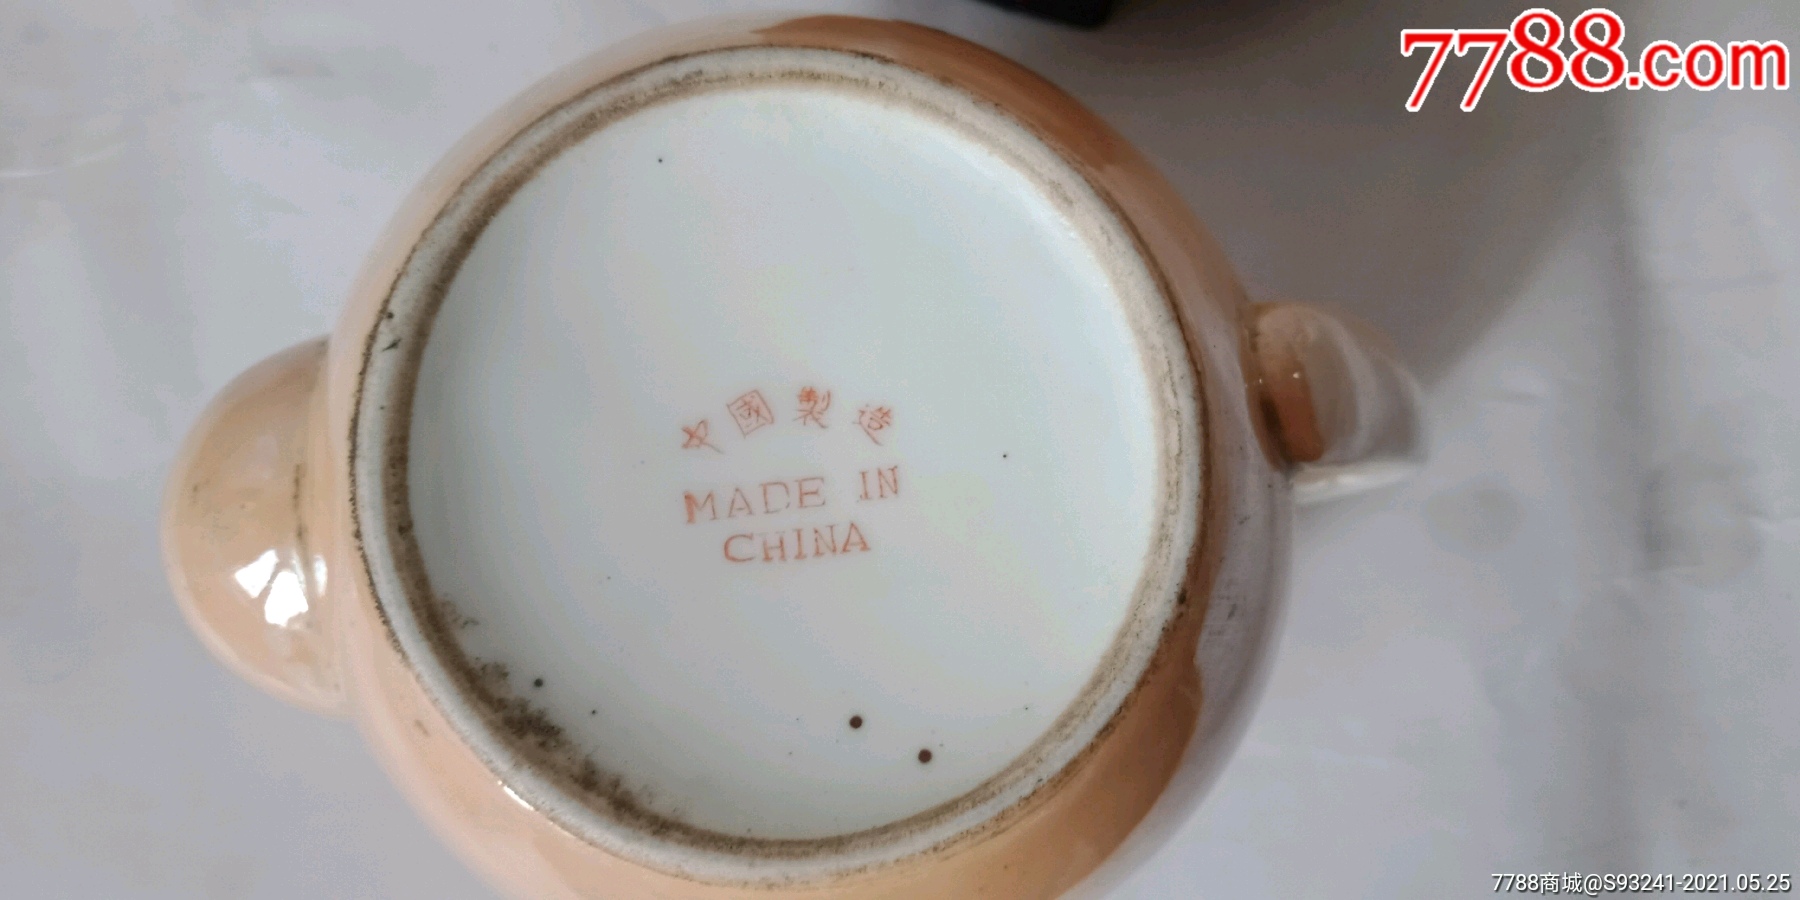 中国制造款茶壶_彩绘瓷/彩瓷_第4张_7788瓷器